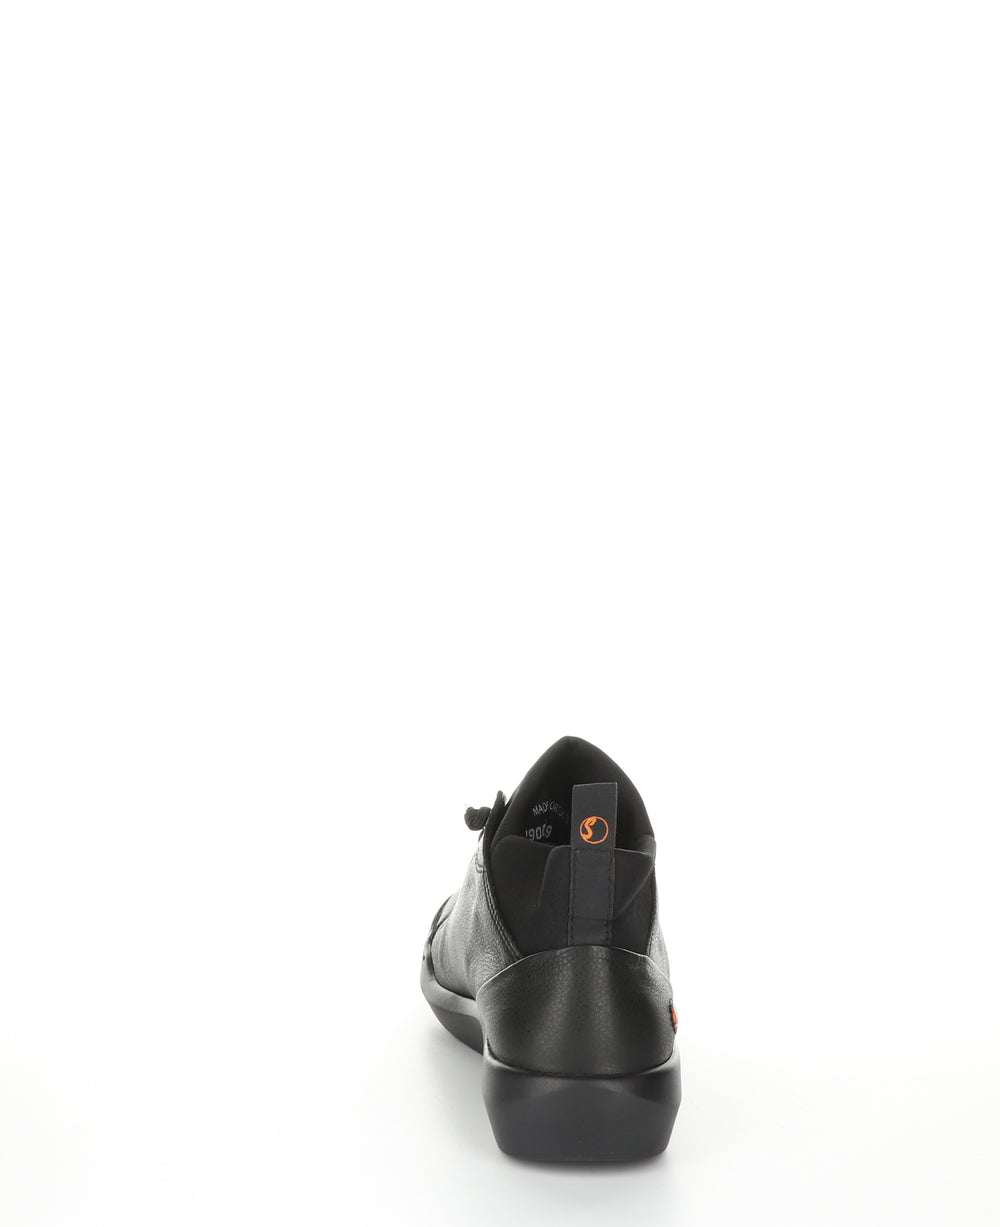 BIEL549SOF BLACK Hi-Top Trainers|BIEL549SOF Chaussures à Bout Rond in Noir